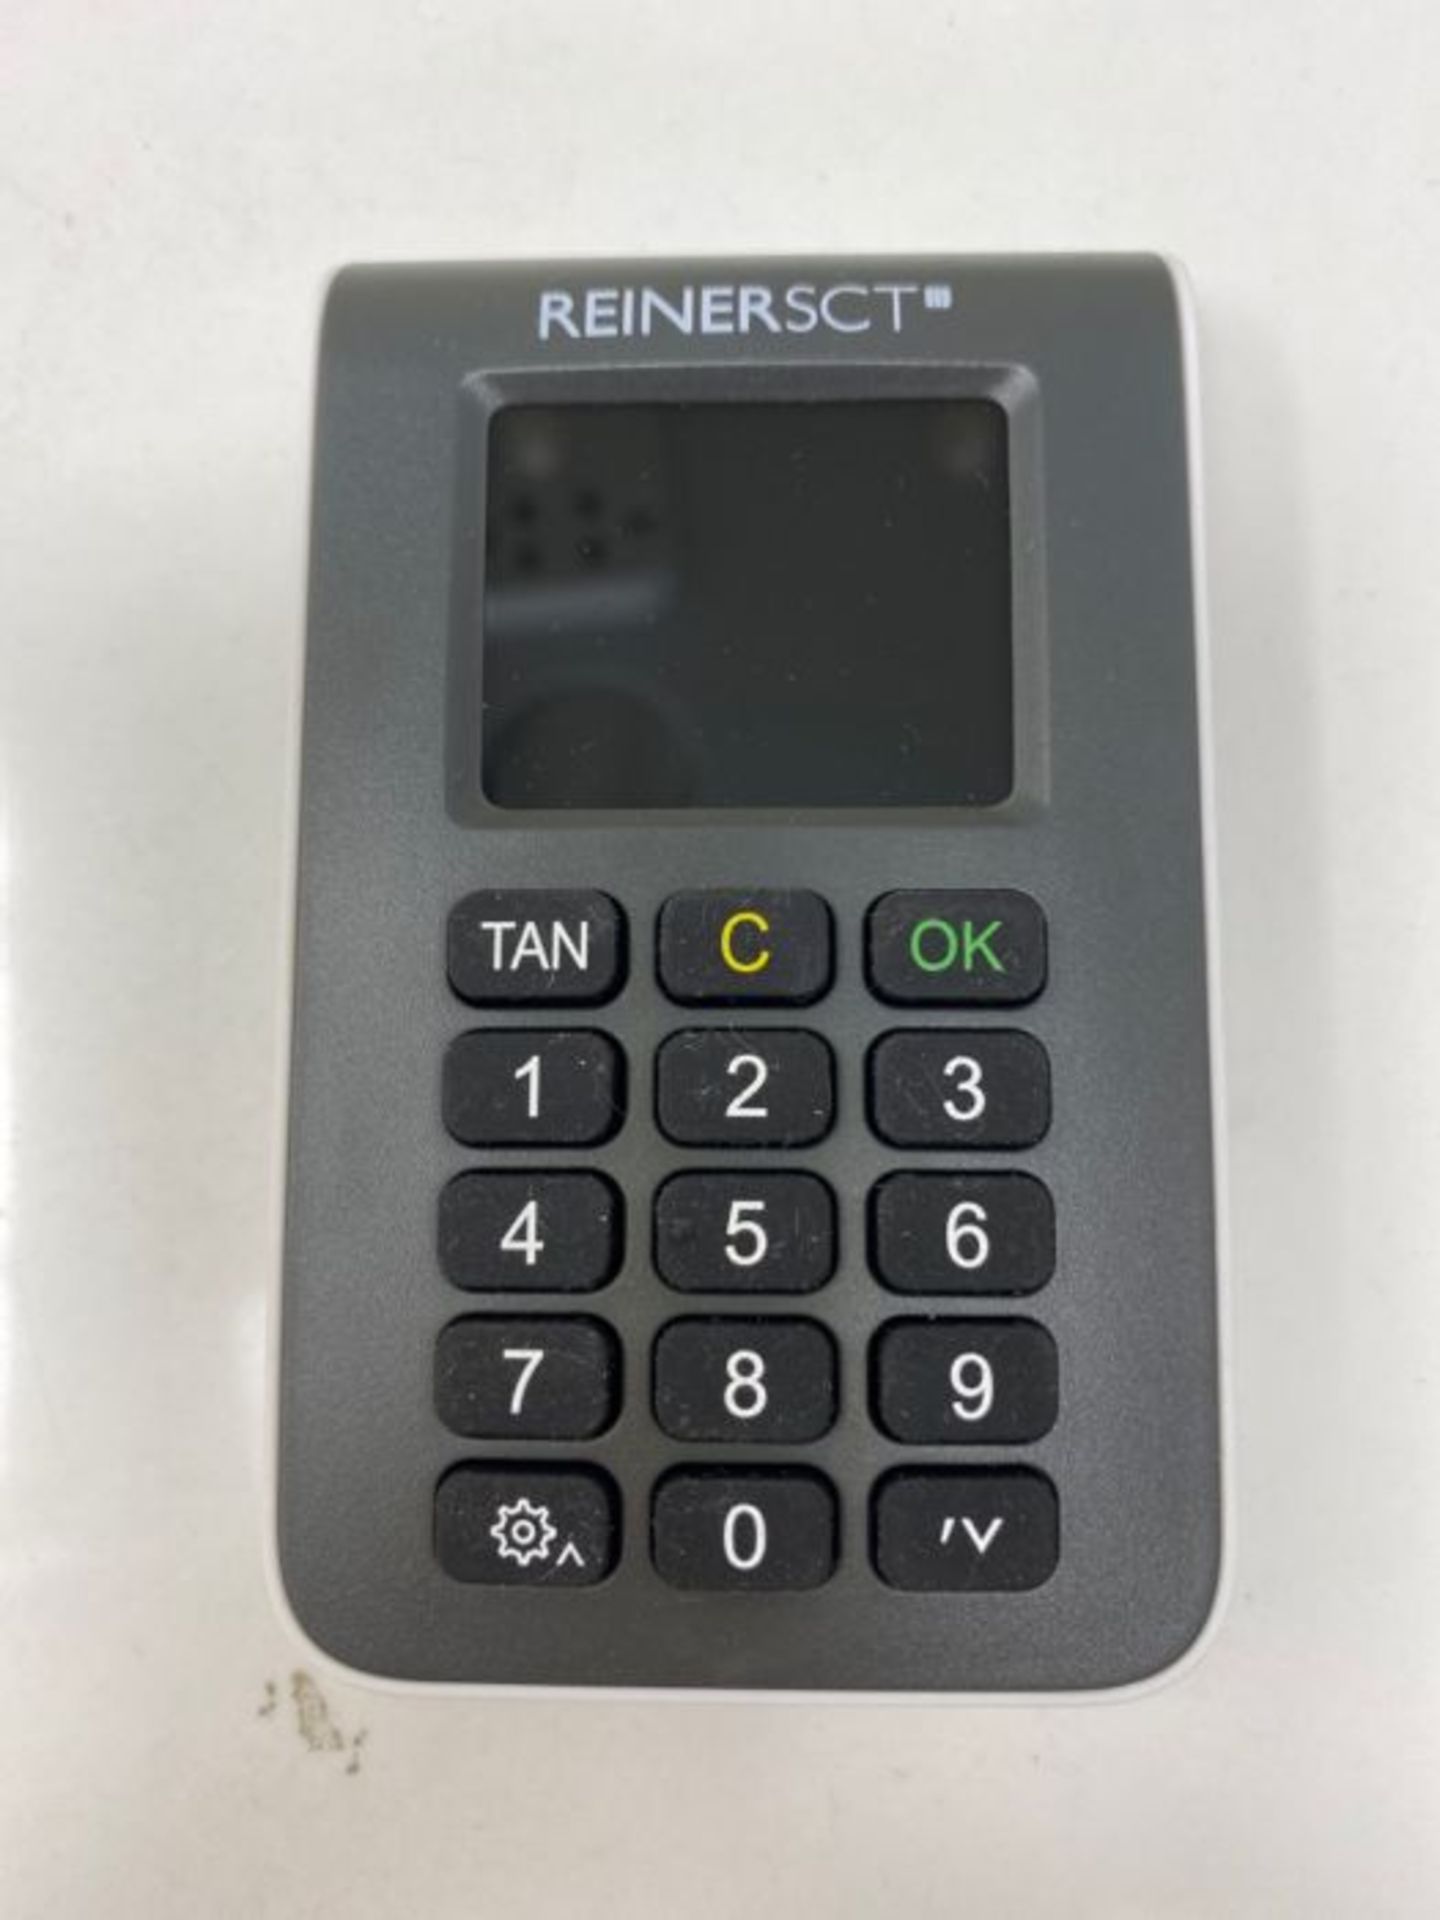 REINER SCT tanJack photo QR I Chip Tan Generator für Online Banking - Image 3 of 3